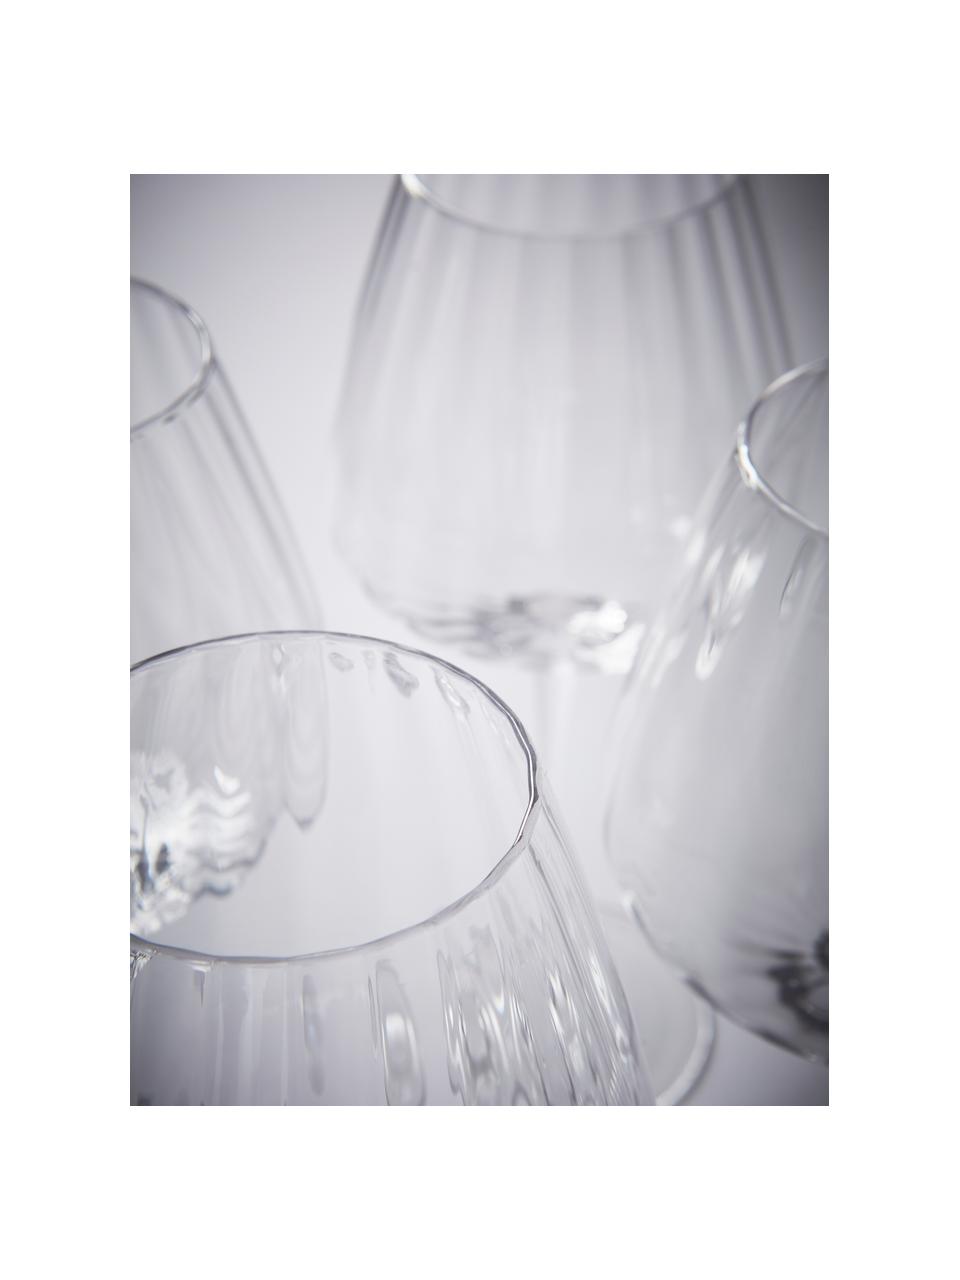 Bicchiere vino rosso con struttura scanalata Akia 4 pz, Vetro, Trasparente, Ø 10 x Alt. 24 cm